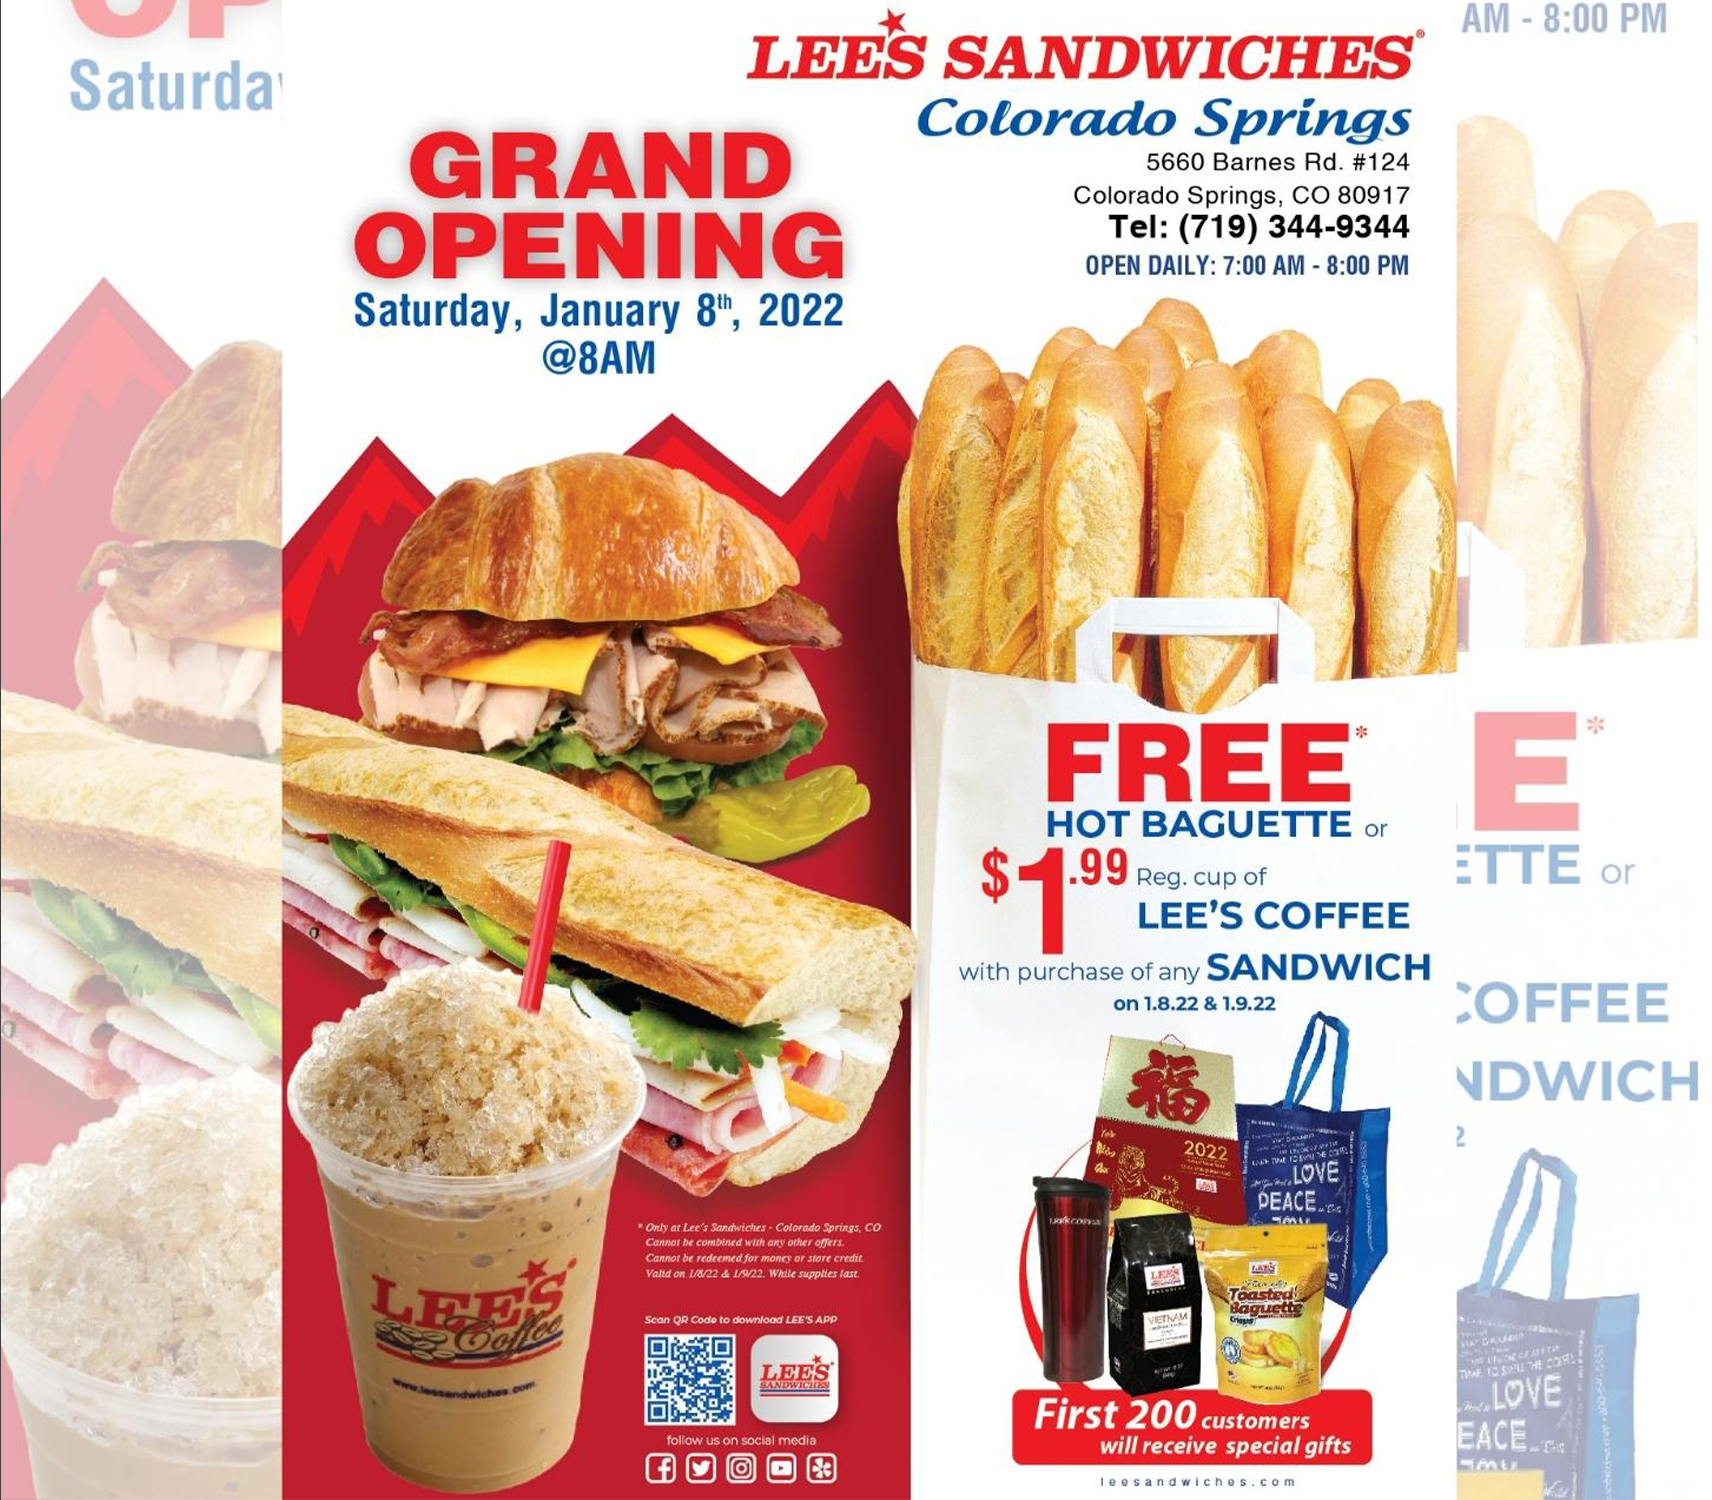 Lee's Sandwiches mở tiệm thứ 70 ở Colorado với nhiều khuyến mãi